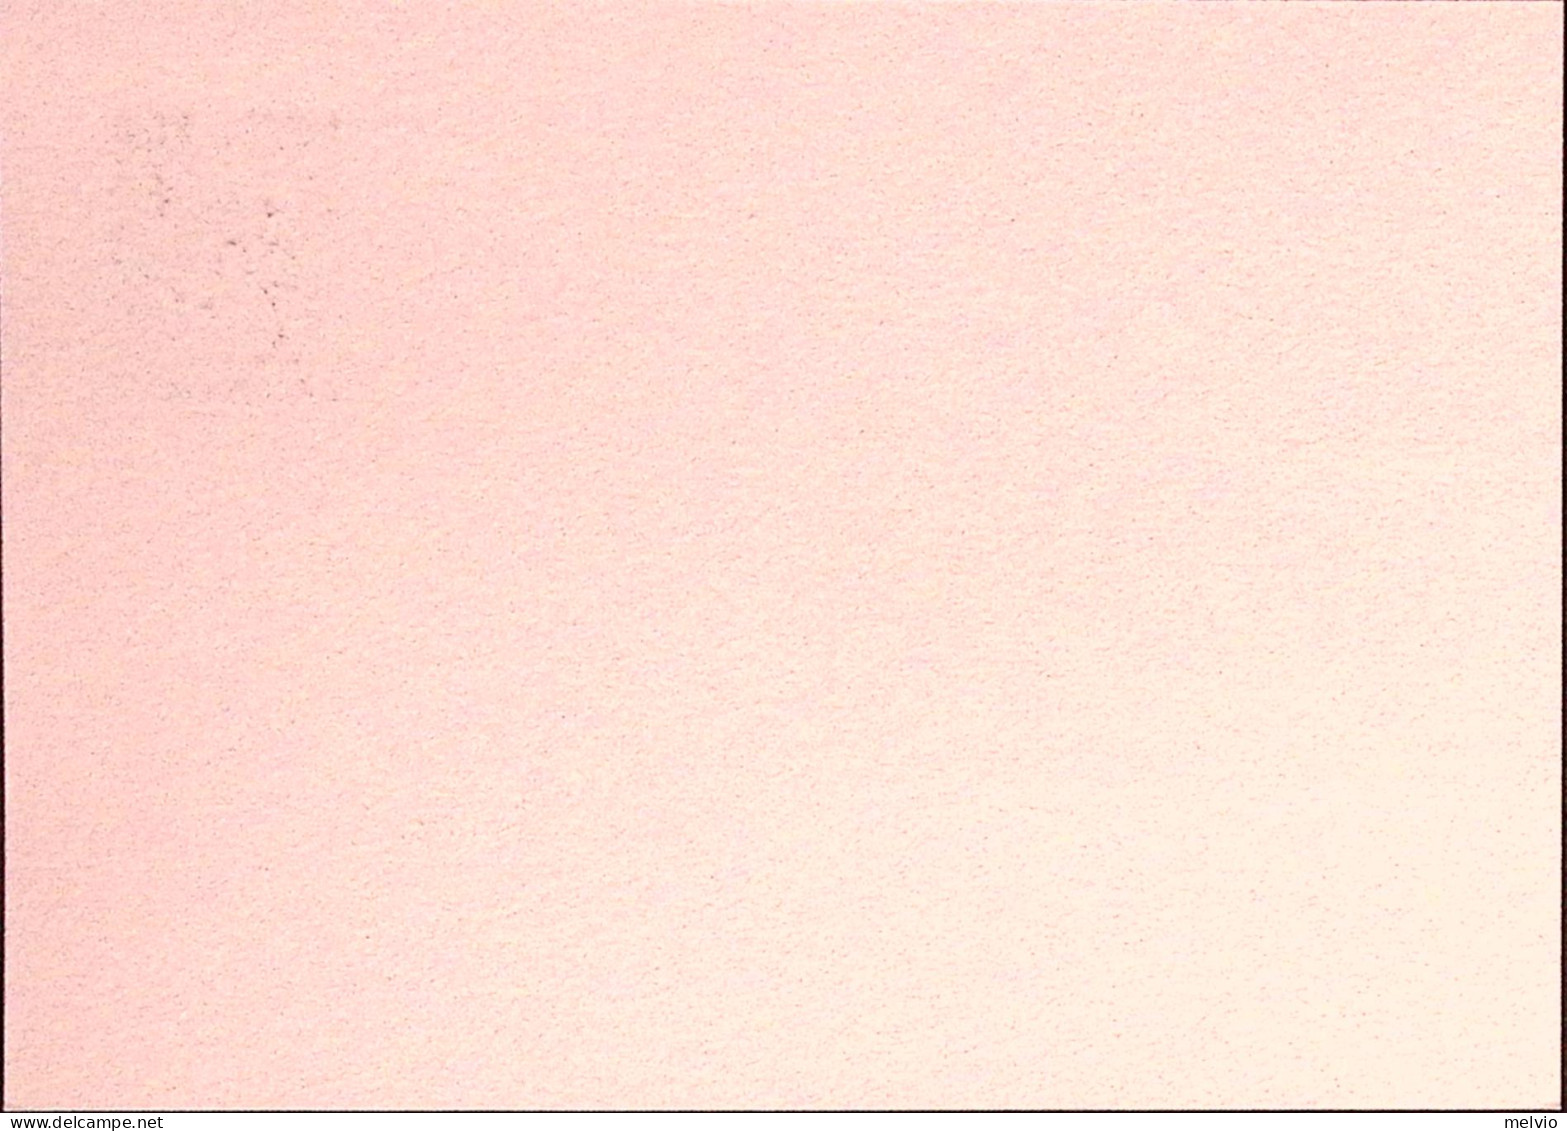 1993-ABRUZZOPHIL Cartolina Postale IPZS Lire 700 Con Ann.spec.(27.6) - Interi Postali